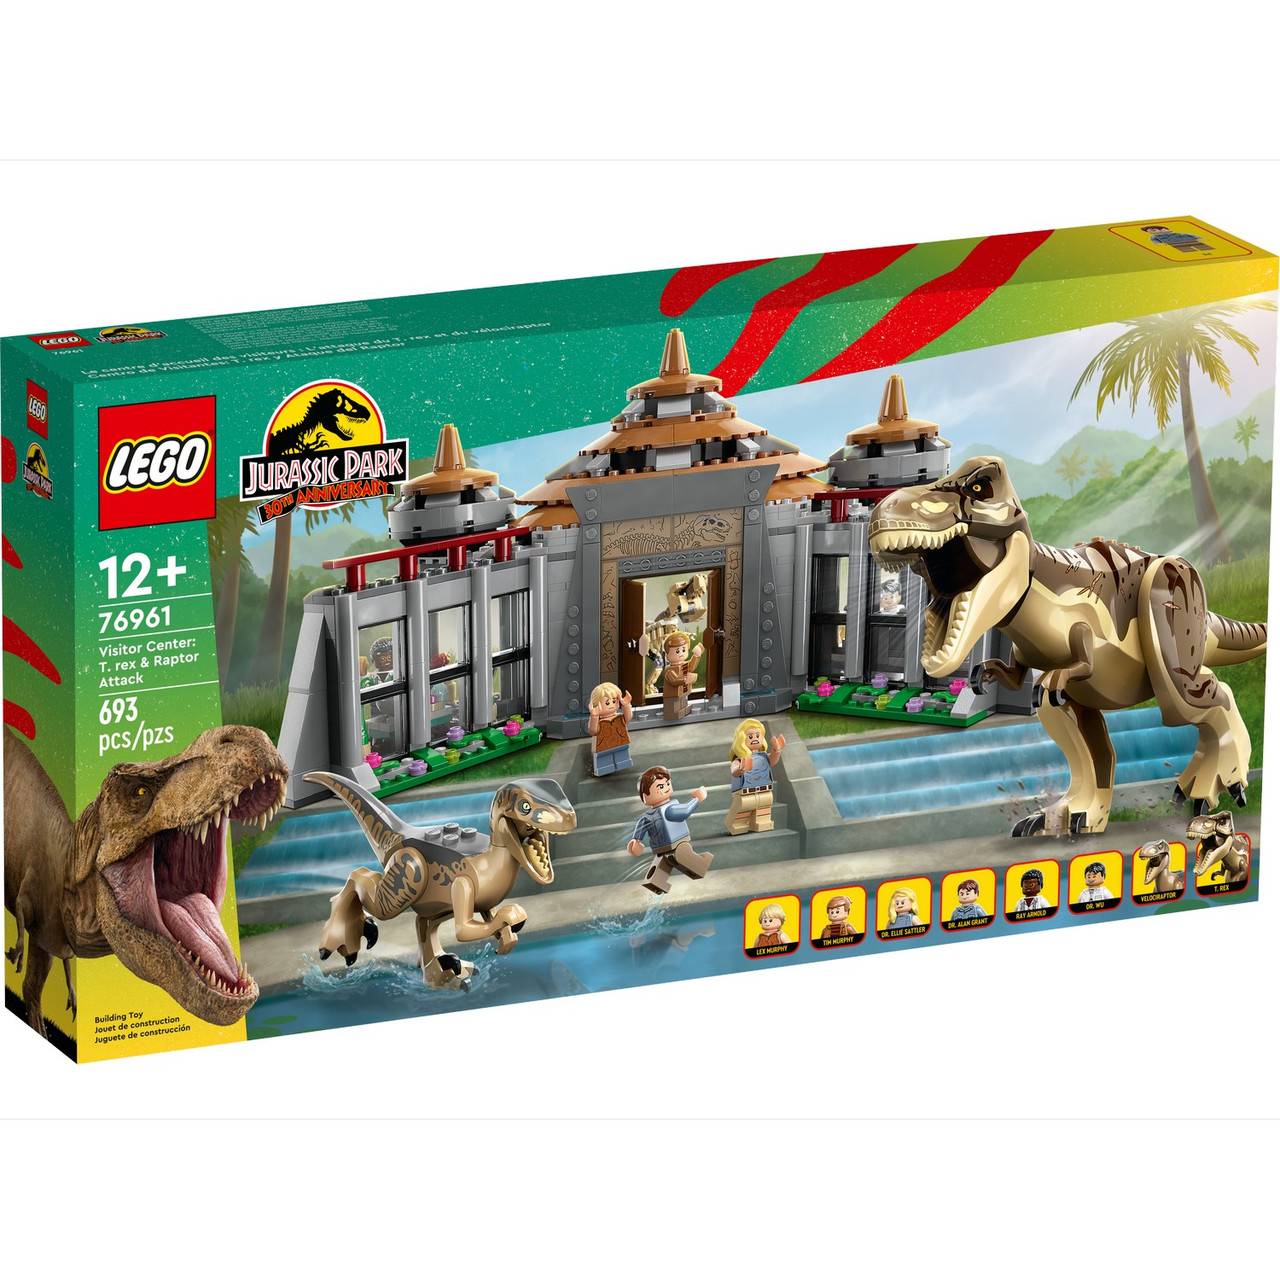 76961 Lego Jurassic Park Центр посетителей. Атака тираннозавра и раптора, Лего Парк Юрского периода